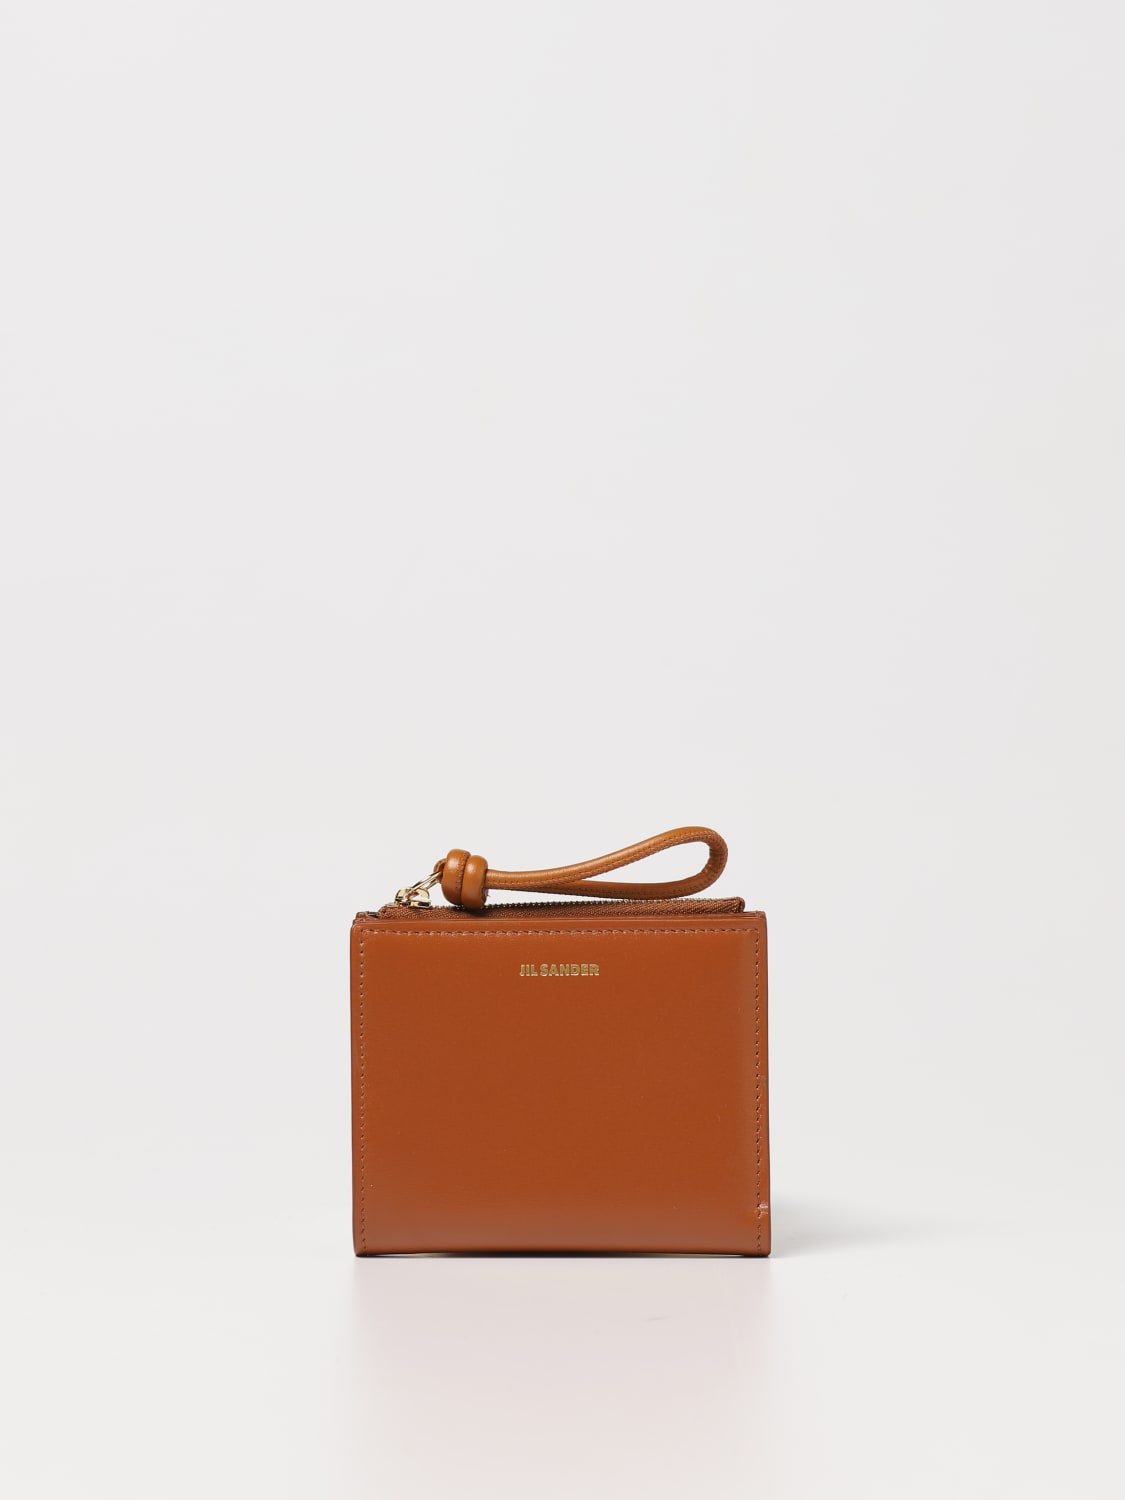 Wallet Jil Sander Woman Color Brown